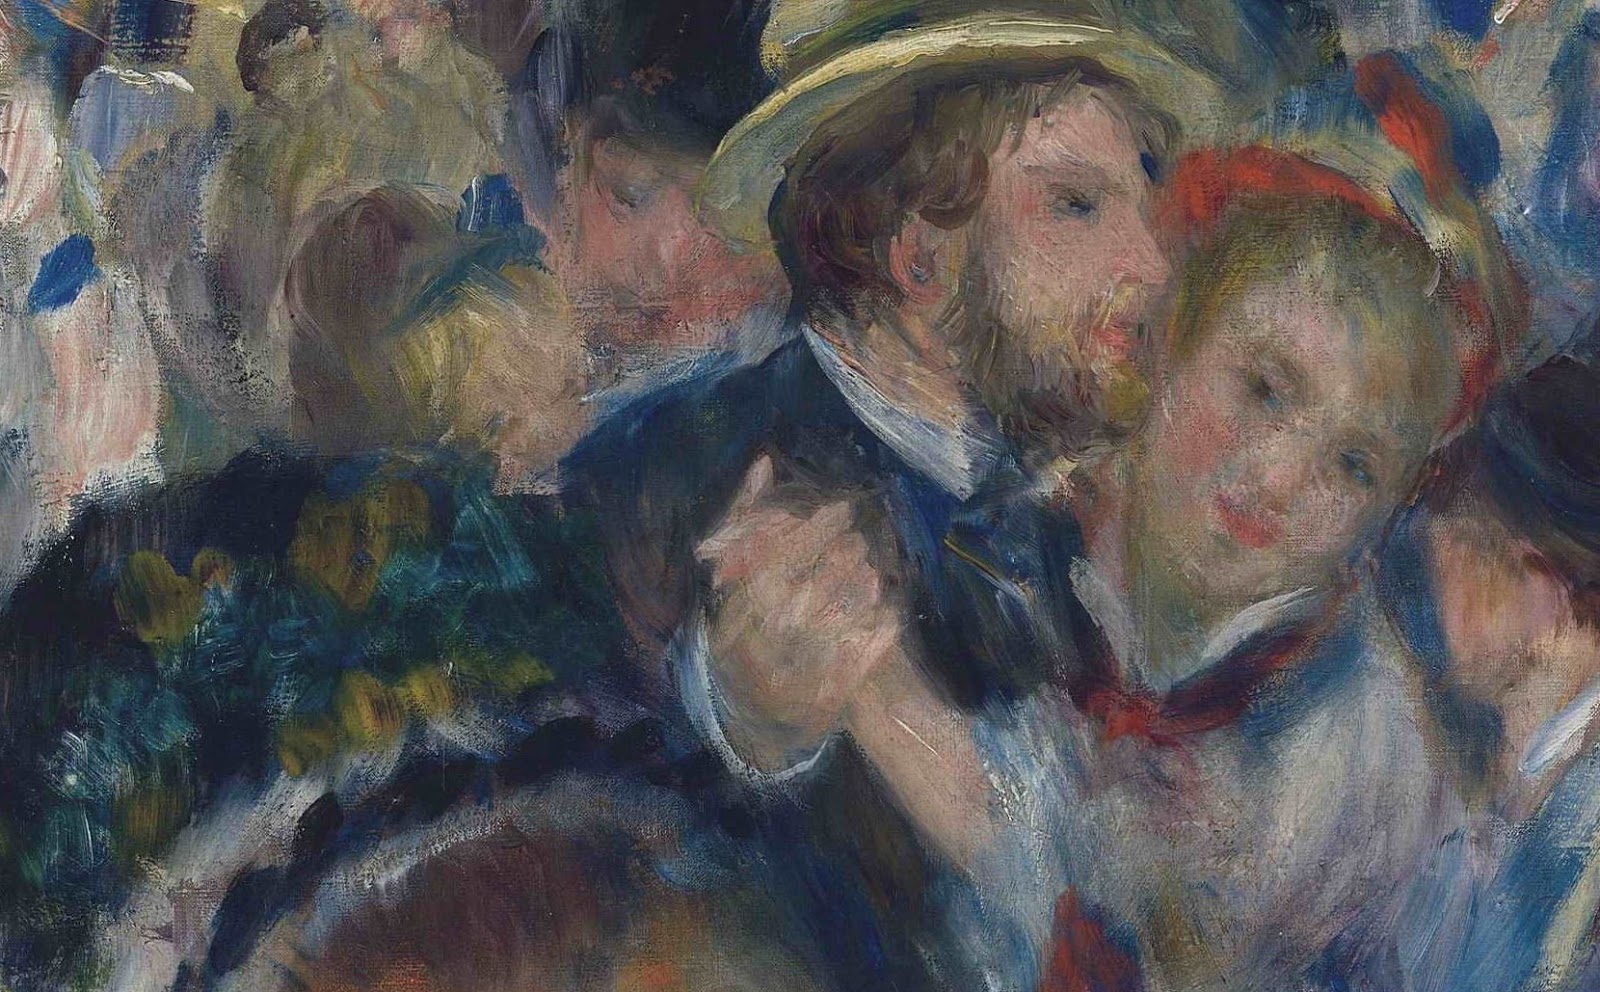 Pierre+Auguste+Renoir-1841-1-19 (436).JPG